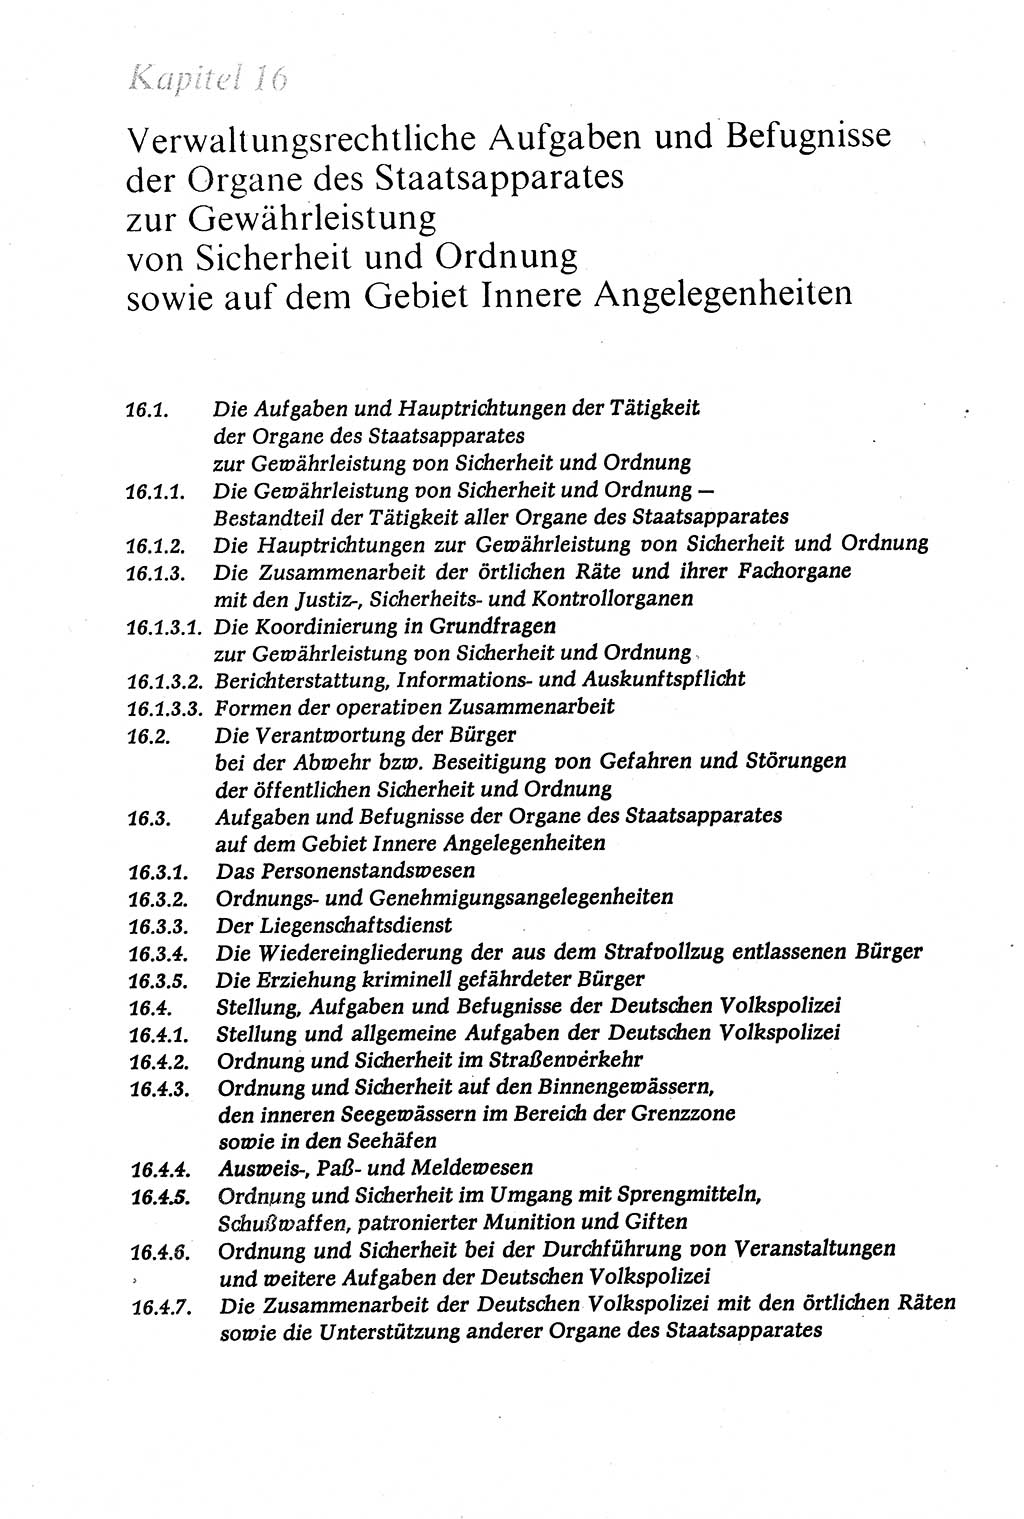 Verwaltungsrecht [Deutsche Demokratische Republik (DDR)], Lehrbuch 1979, Seite 576 (Verw.-R. DDR Lb. 1979, S. 576)